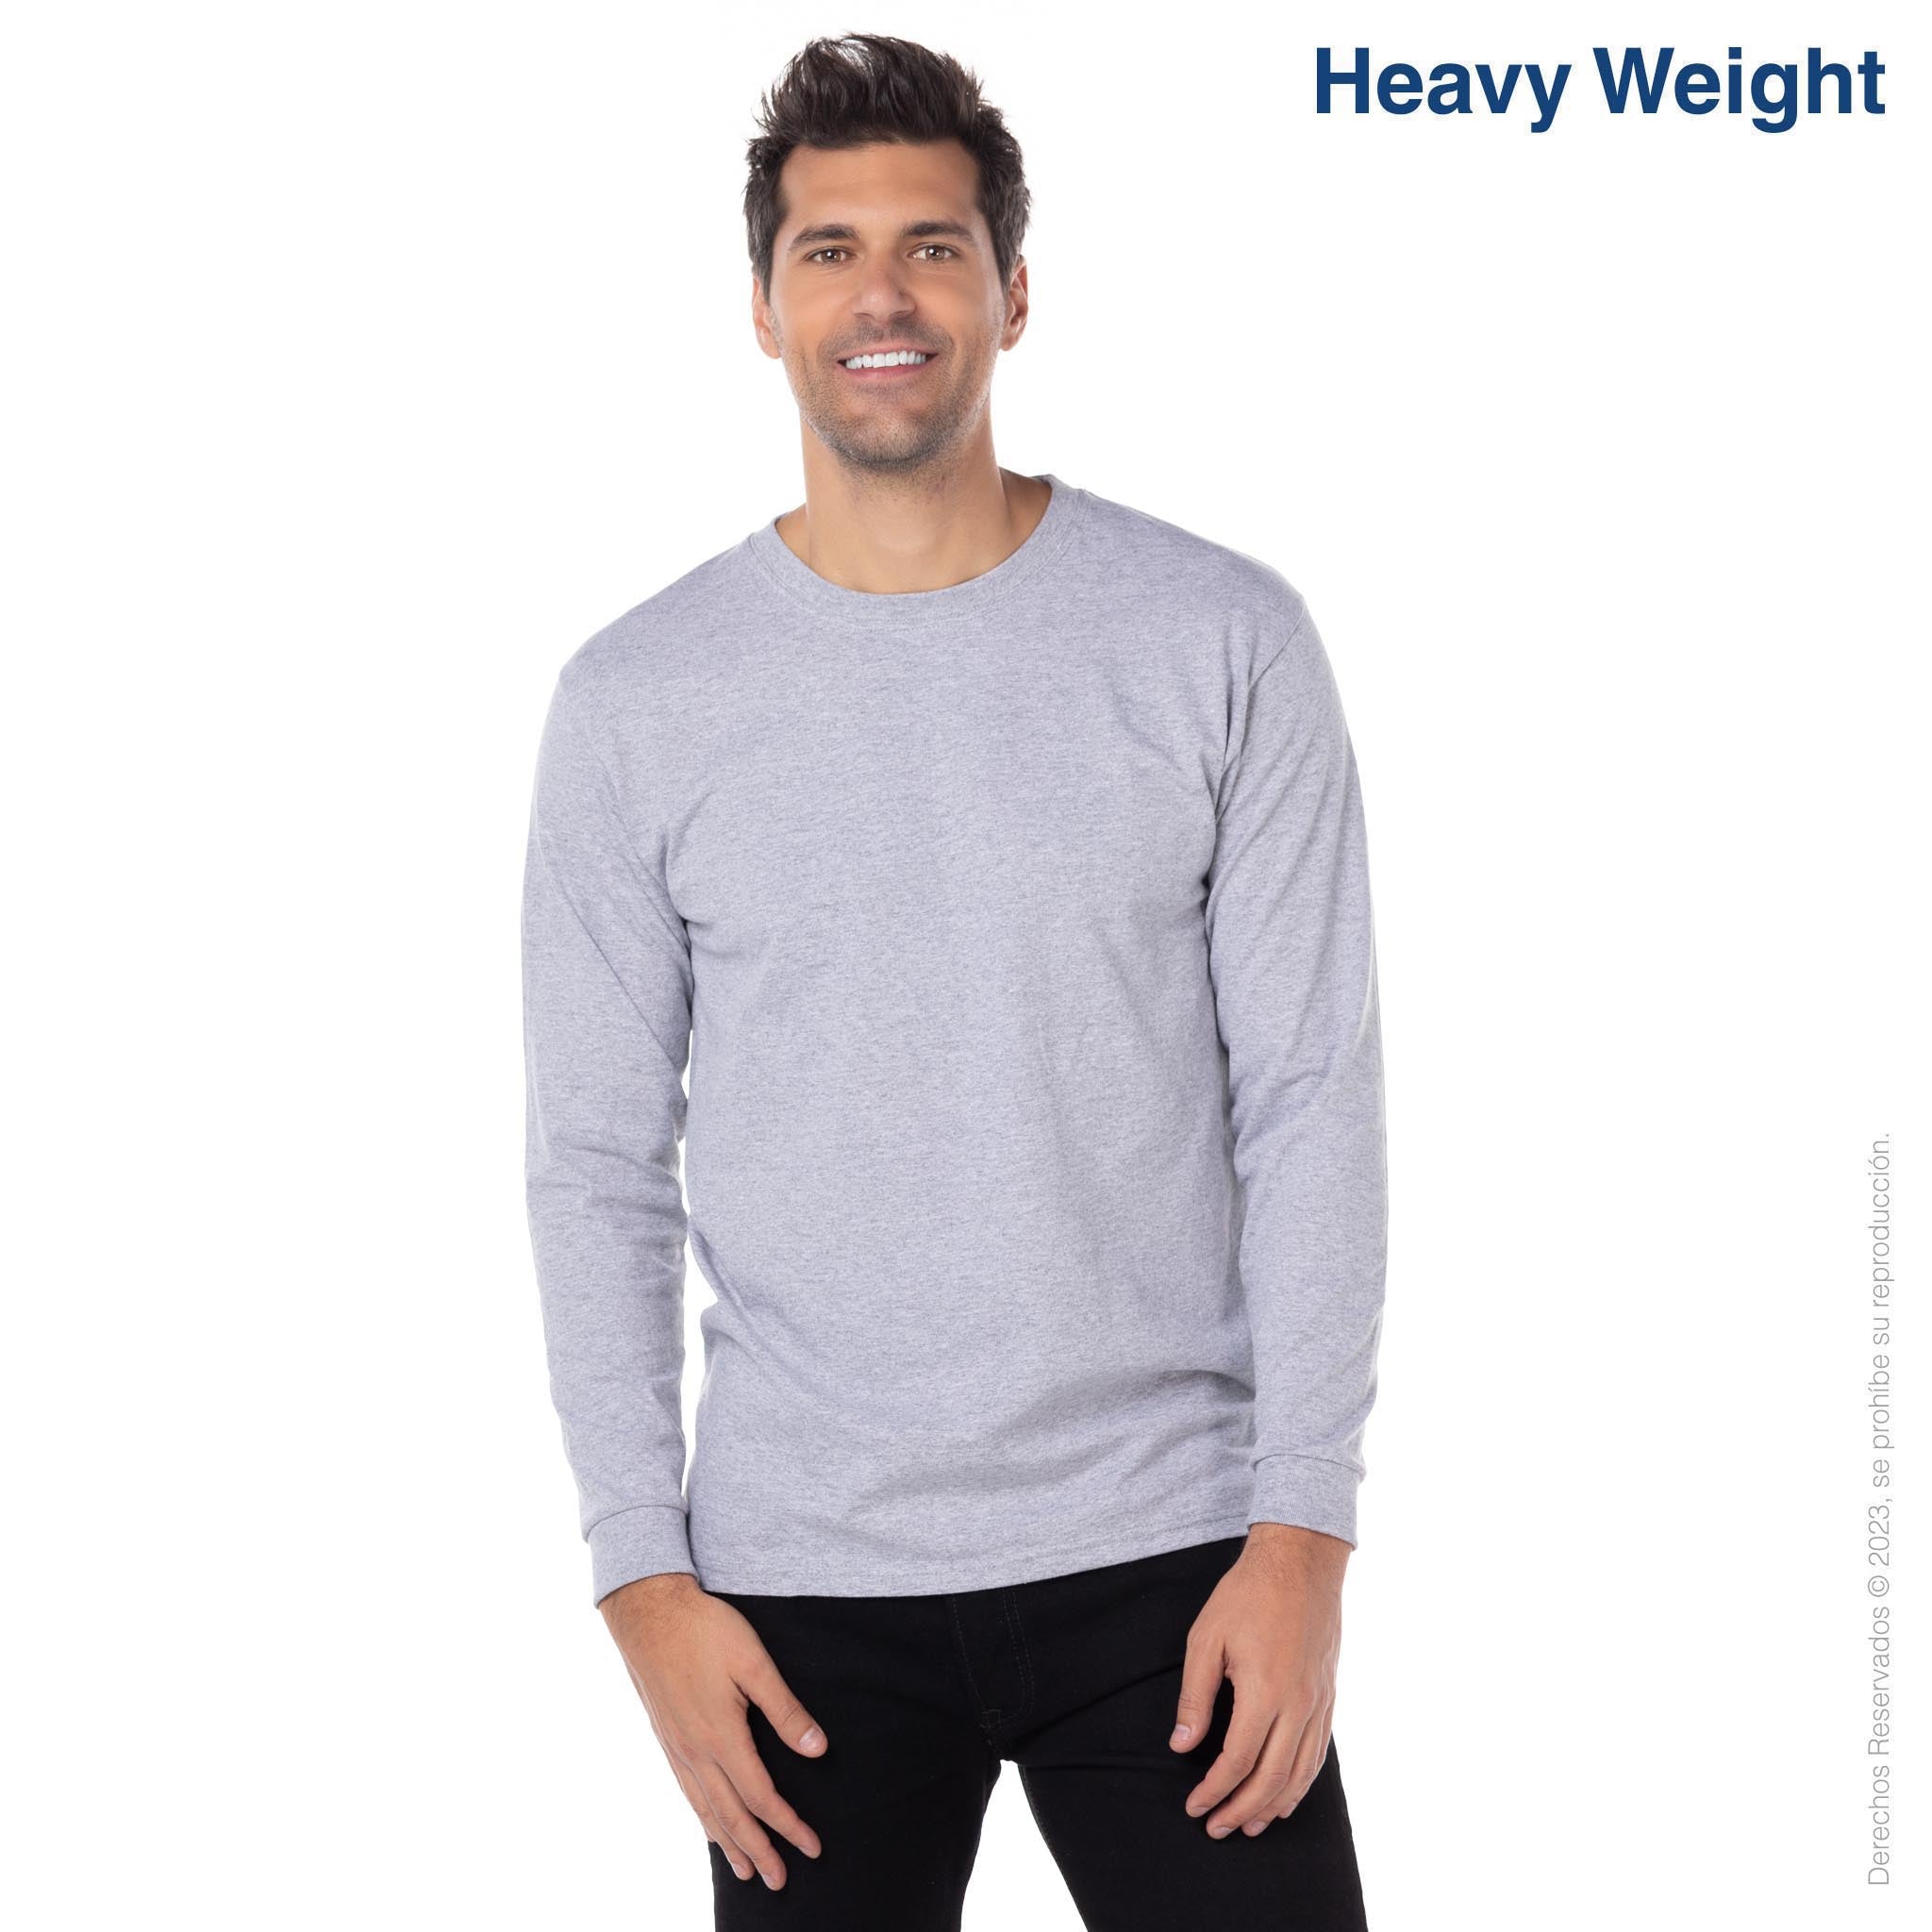 All Brand - Long Sleeve T-Shirt for Men